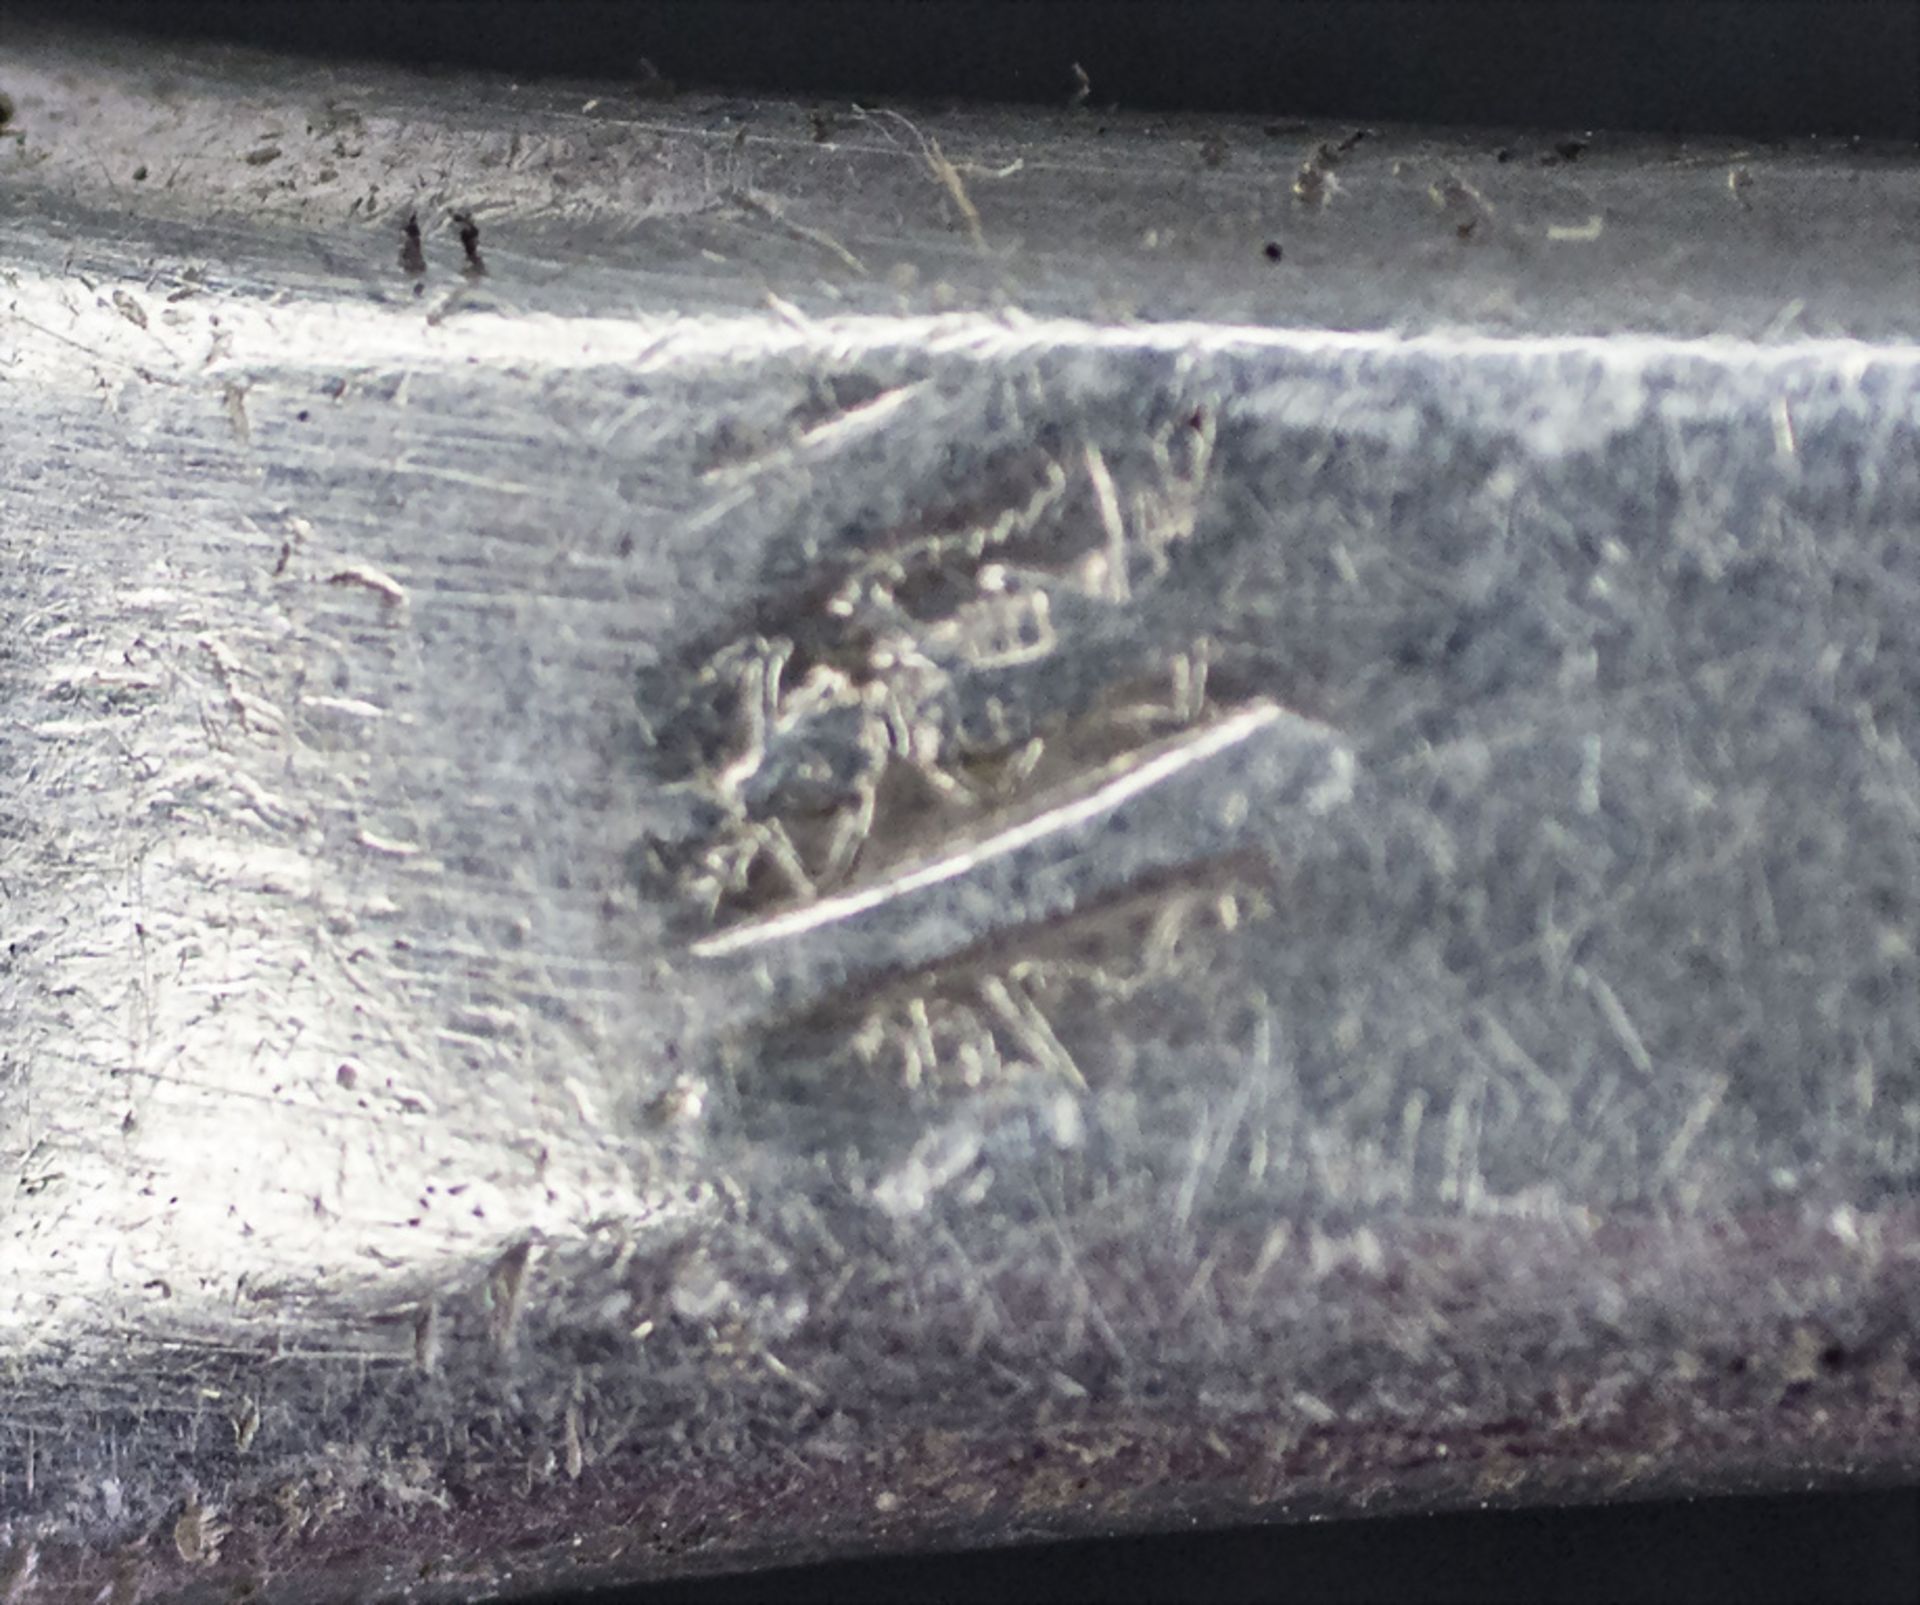 12-tlg. Silberbesteck / A 12-piece set of silver cutlery, Paris, nach 1839 - Bild 4 aus 7